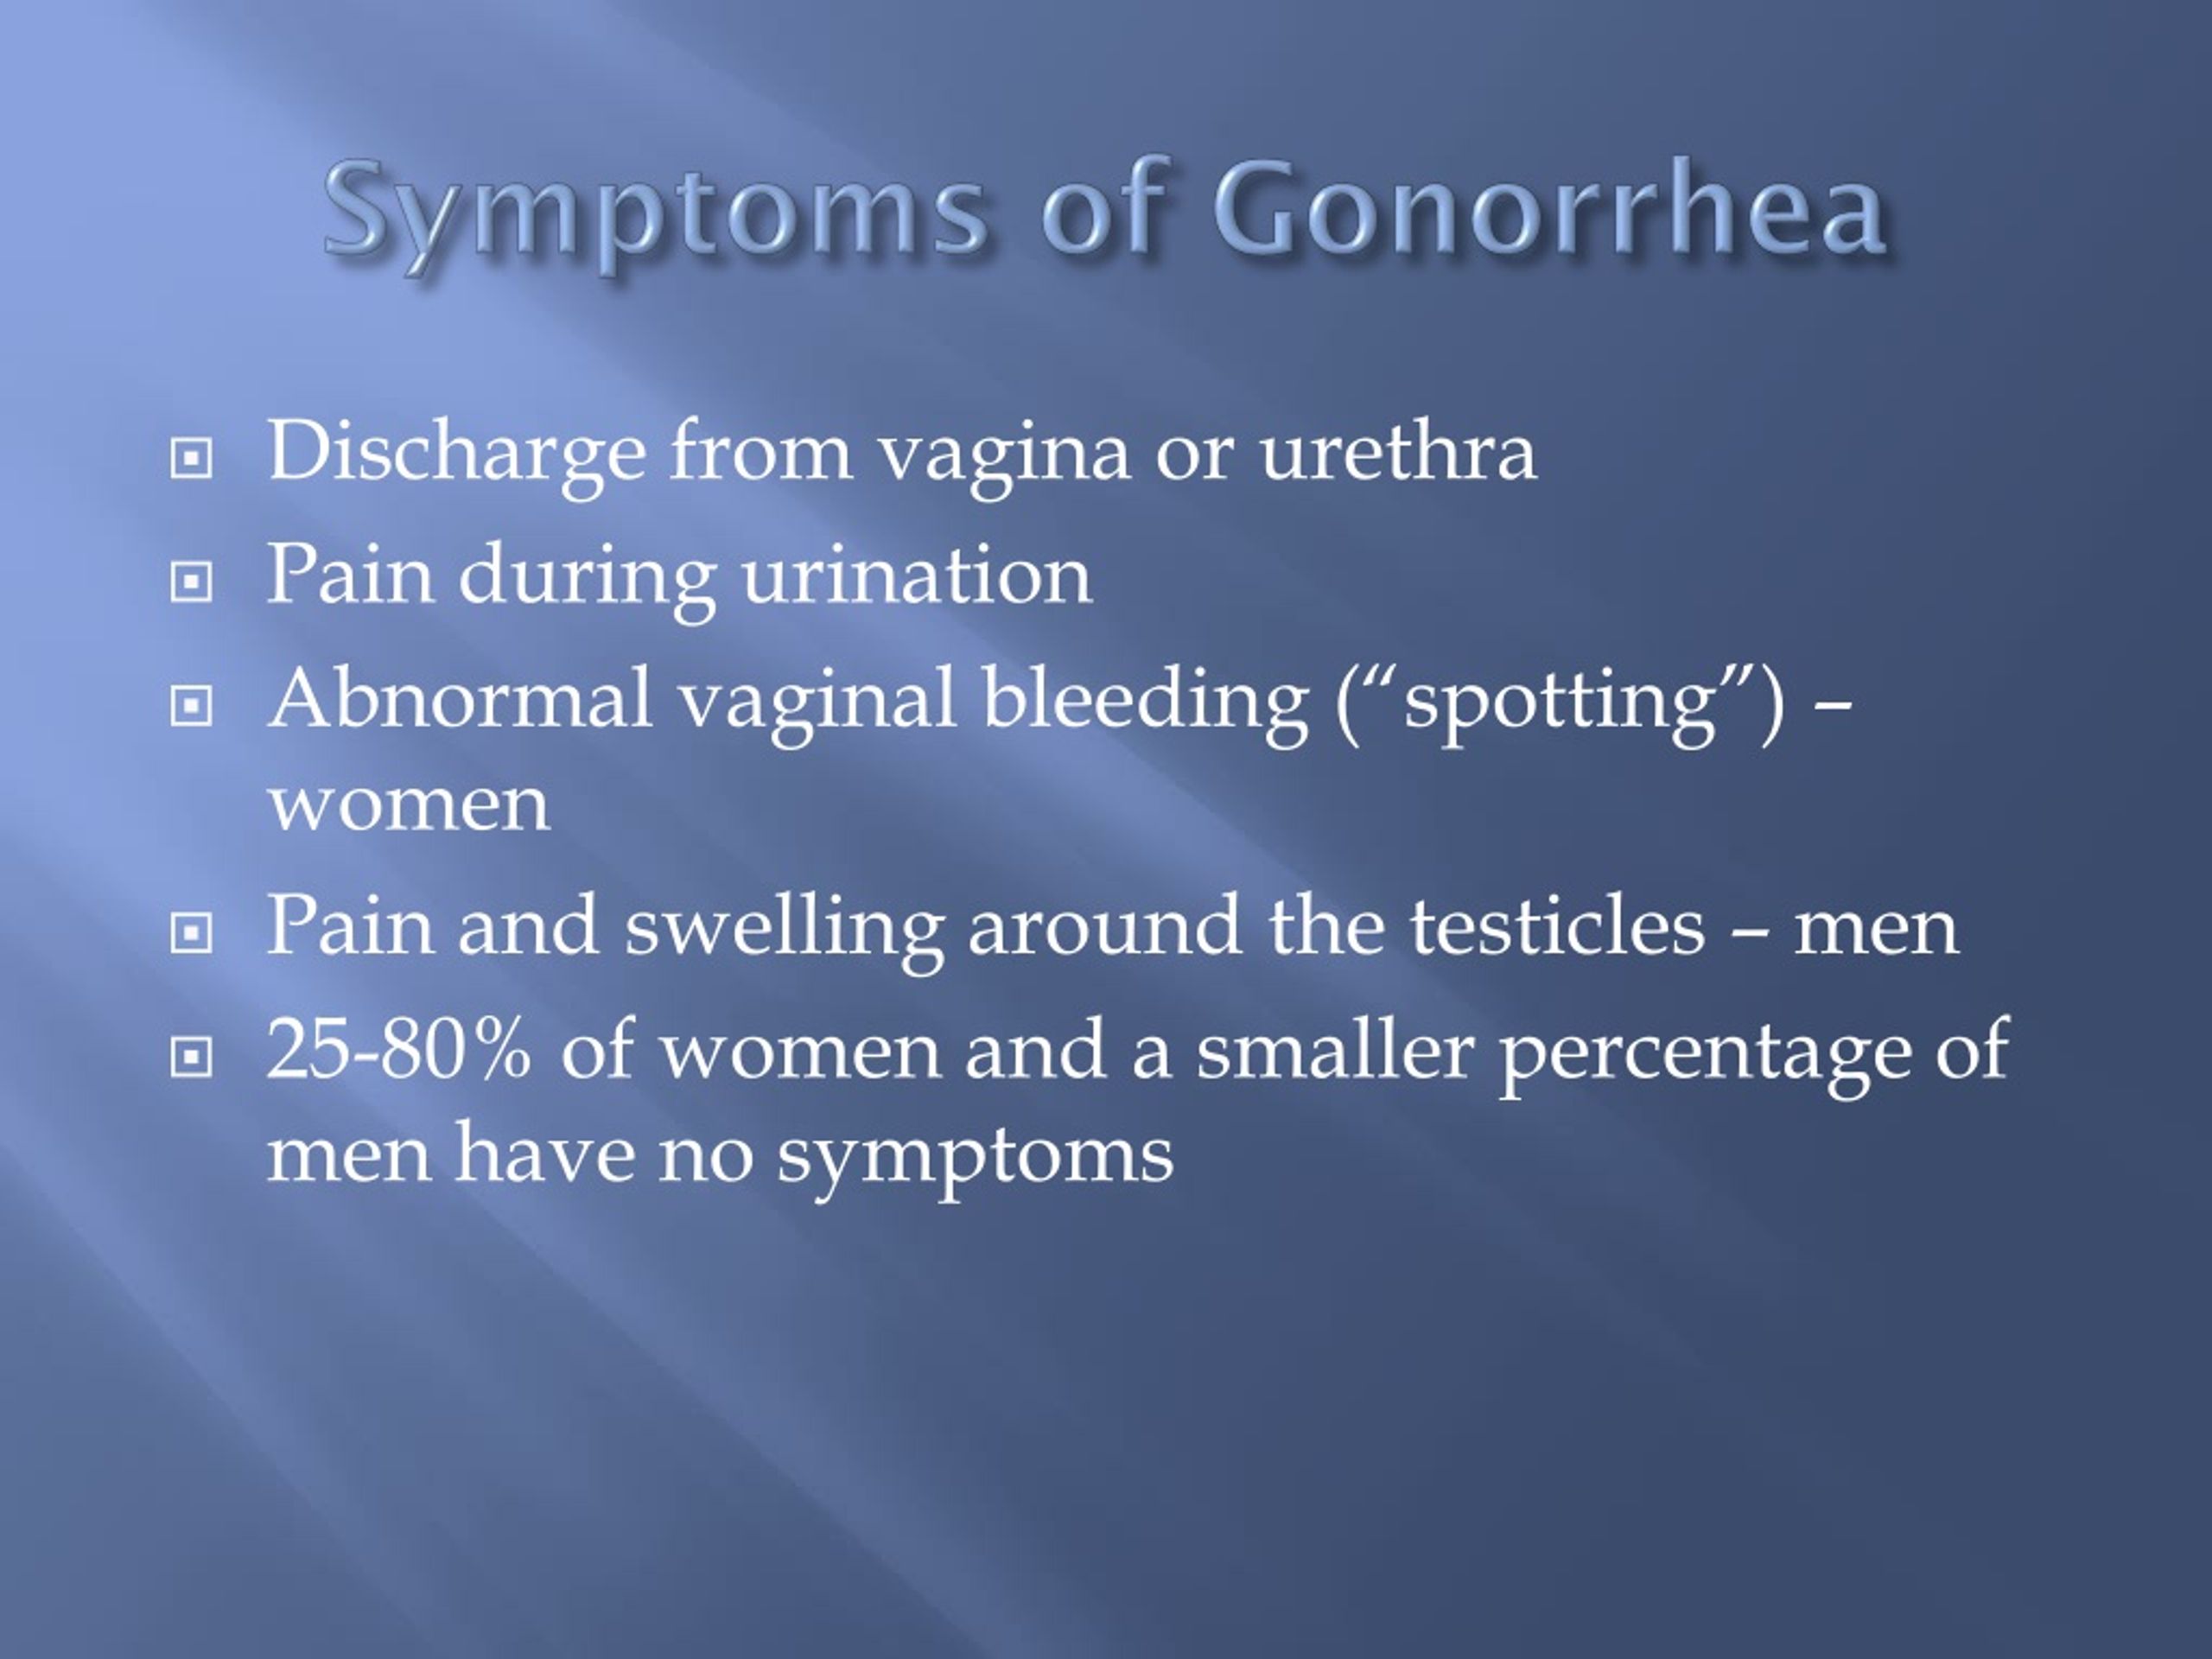 gonorrhea symptoms anal